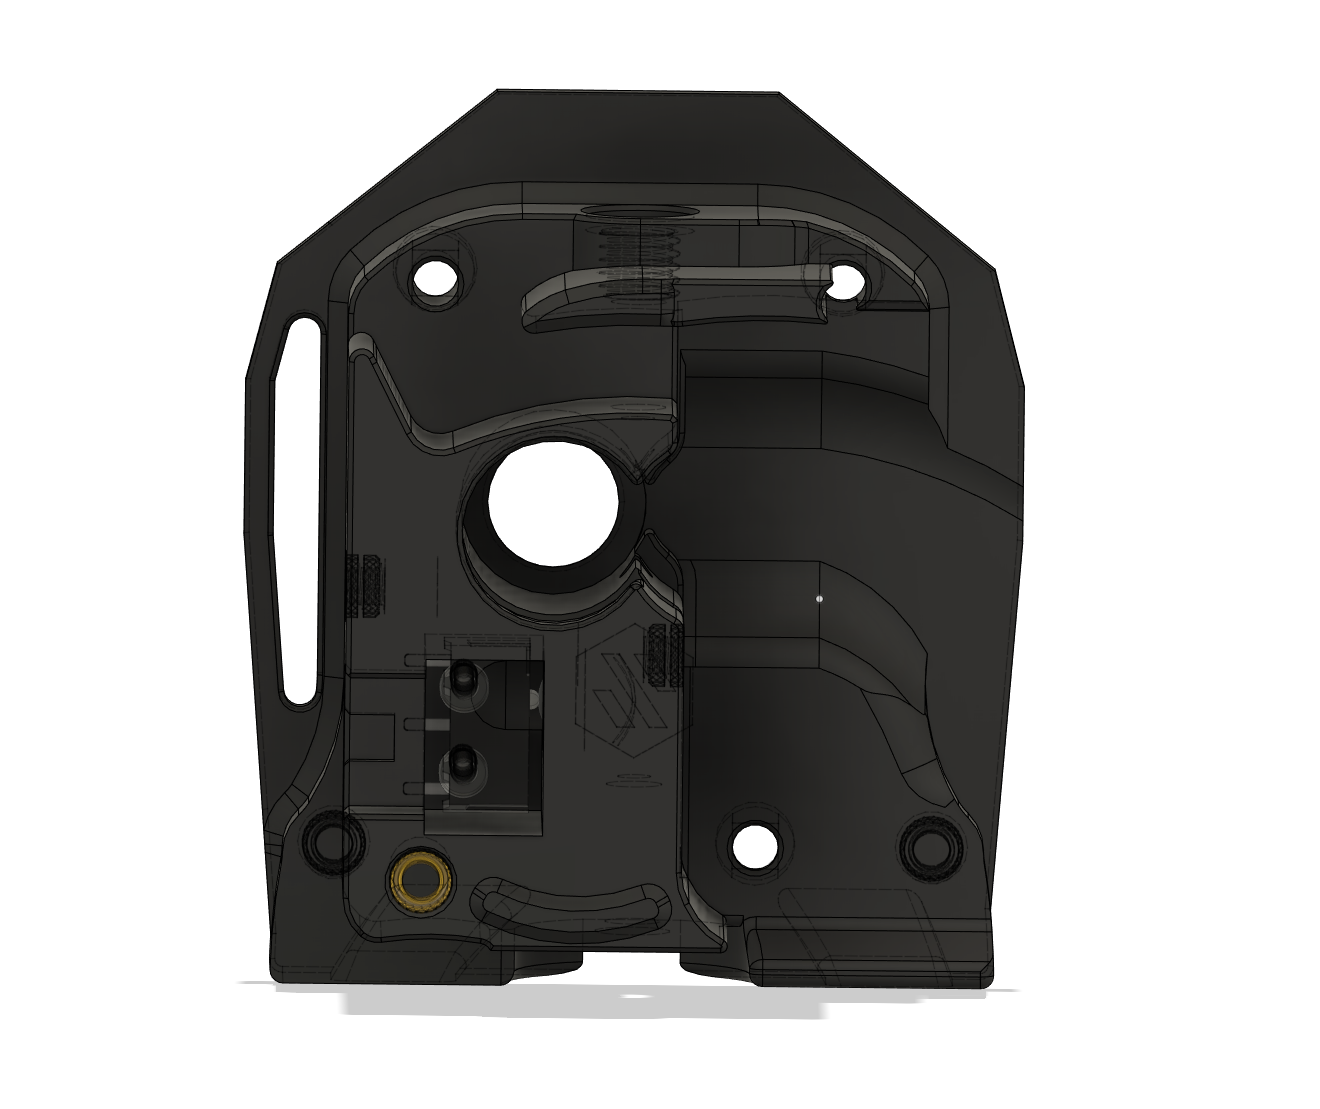 Voron Stealth Burner ERCF Galileo Filament Sensor Mod